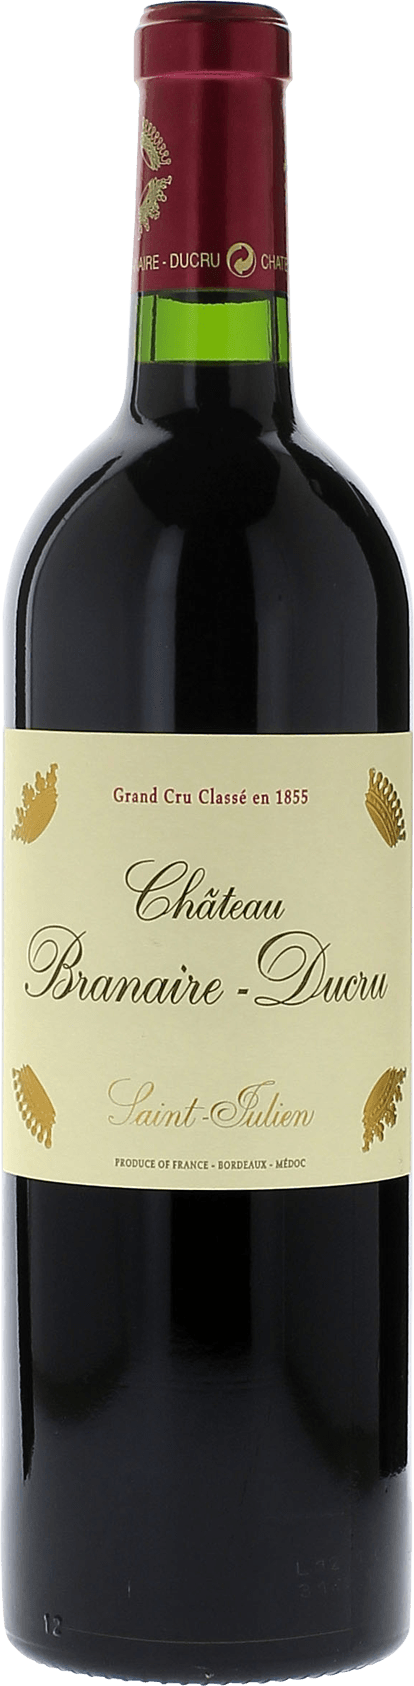 Branaire ducru 2018 4me Grand cru class Saint-Julien, Bordeaux rouge